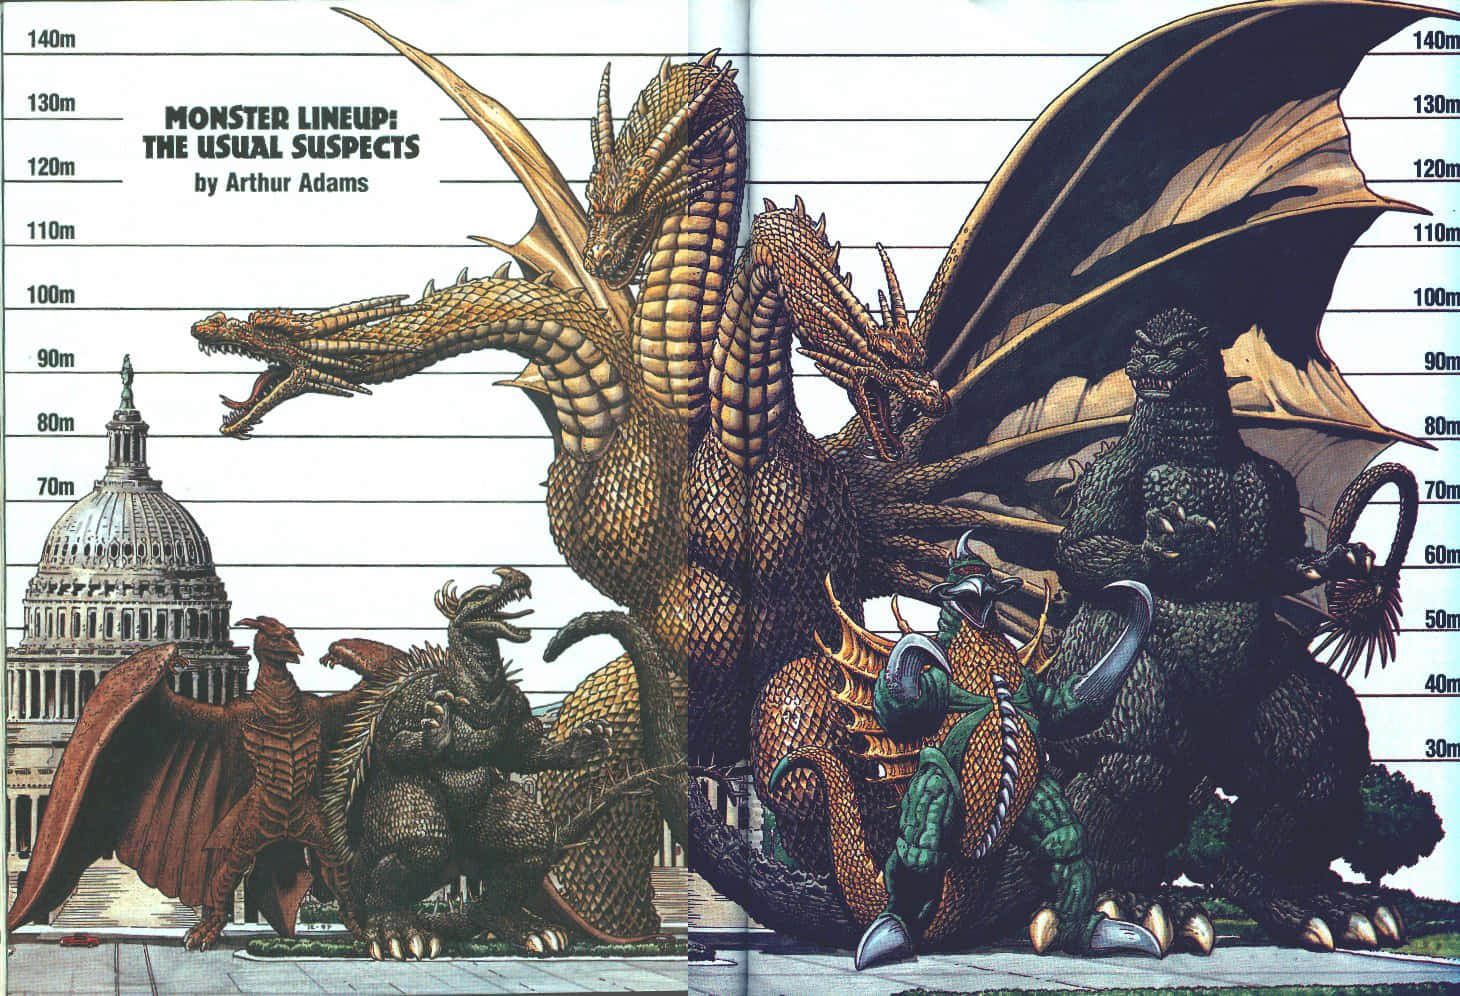 Godzilla 1998 Standing Tall Amid A Fierce City Showdown Wallpaper